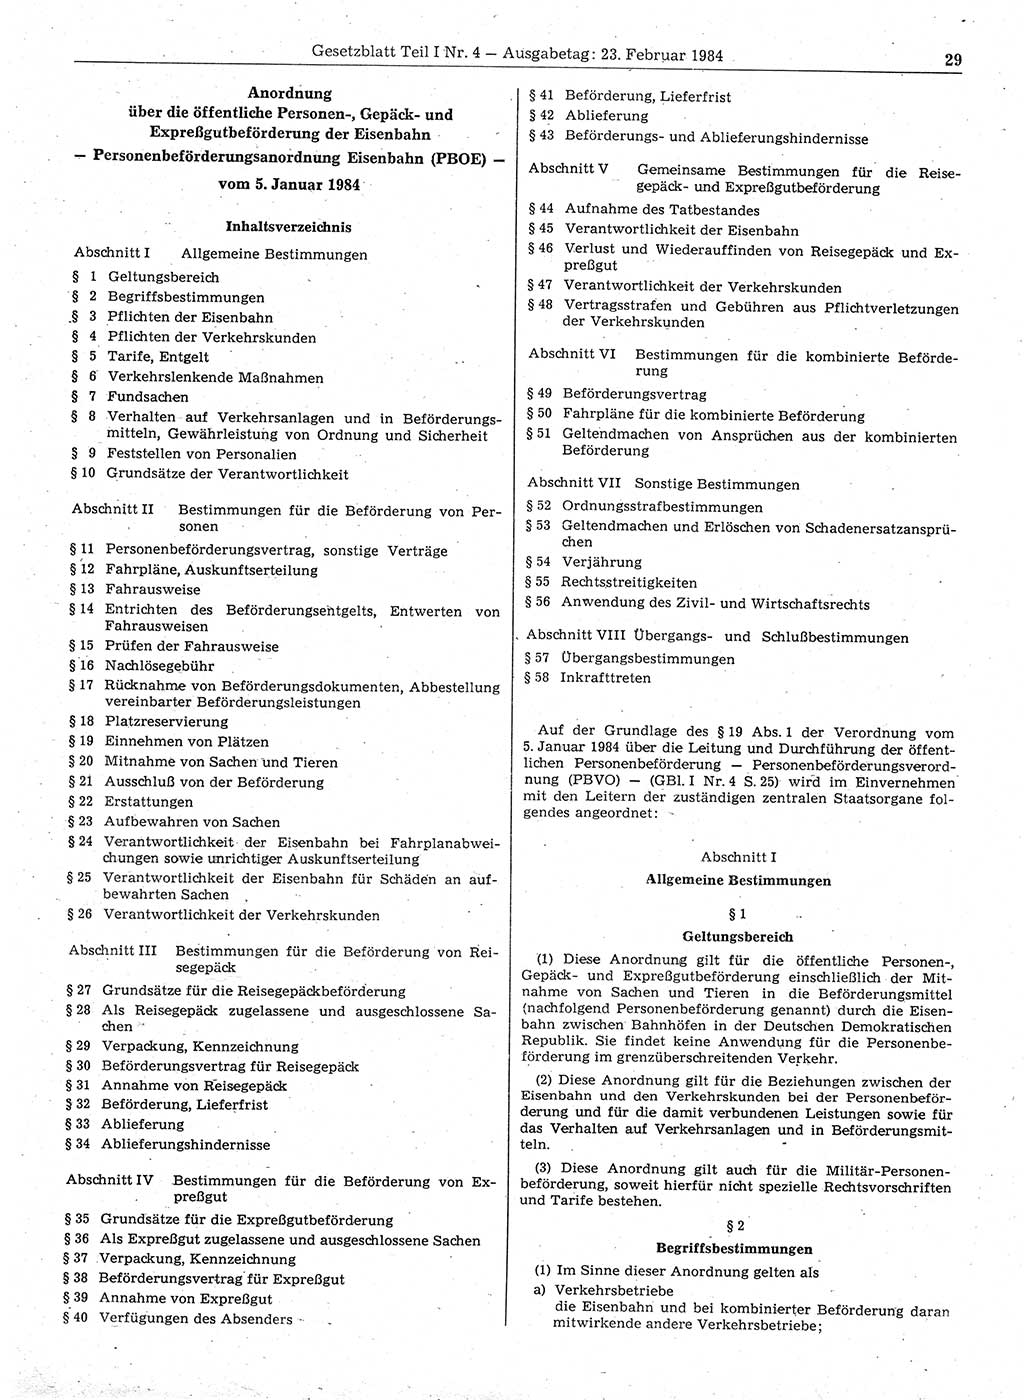 Gesetzblatt (GBl.) der Deutschen Demokratischen Republik (DDR) Teil Ⅰ 1984, Seite 29 (GBl. DDR Ⅰ 1984, S. 29)